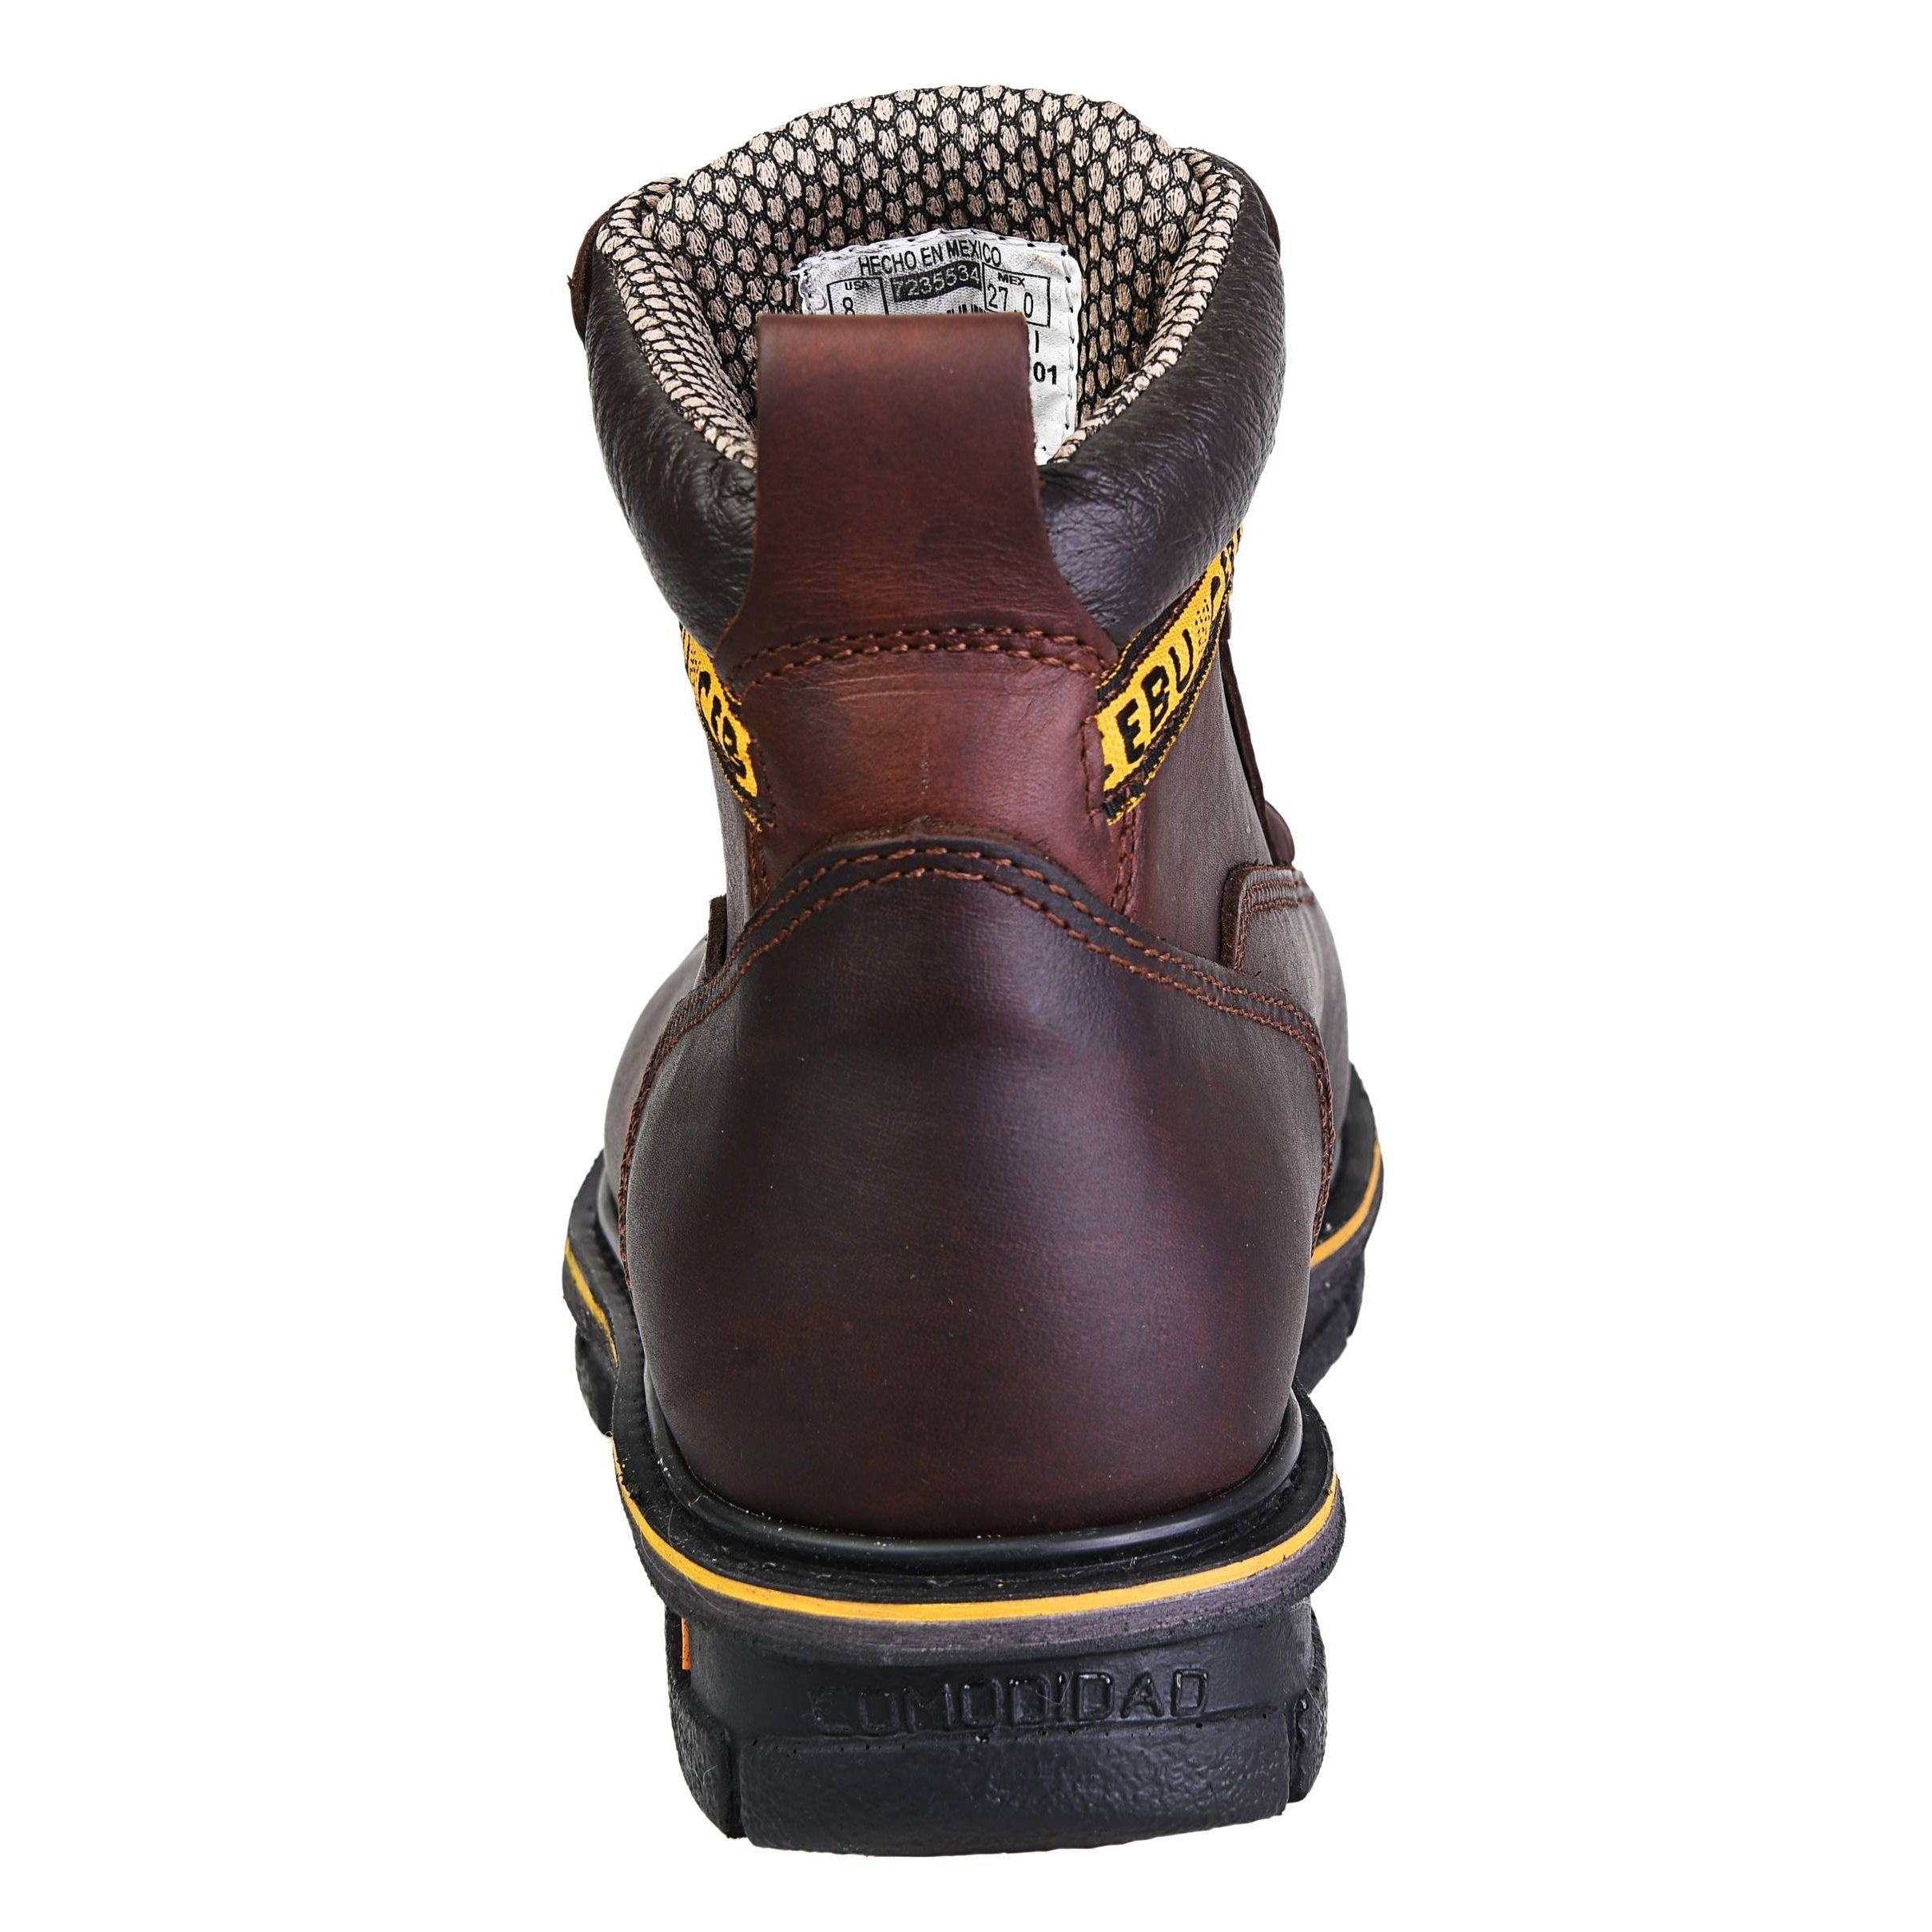 Men's Work Boots - Steel Toe & Versatile - Brown Work Boots - Cebu - 6" Work Boots - Brown 6in Work Boots